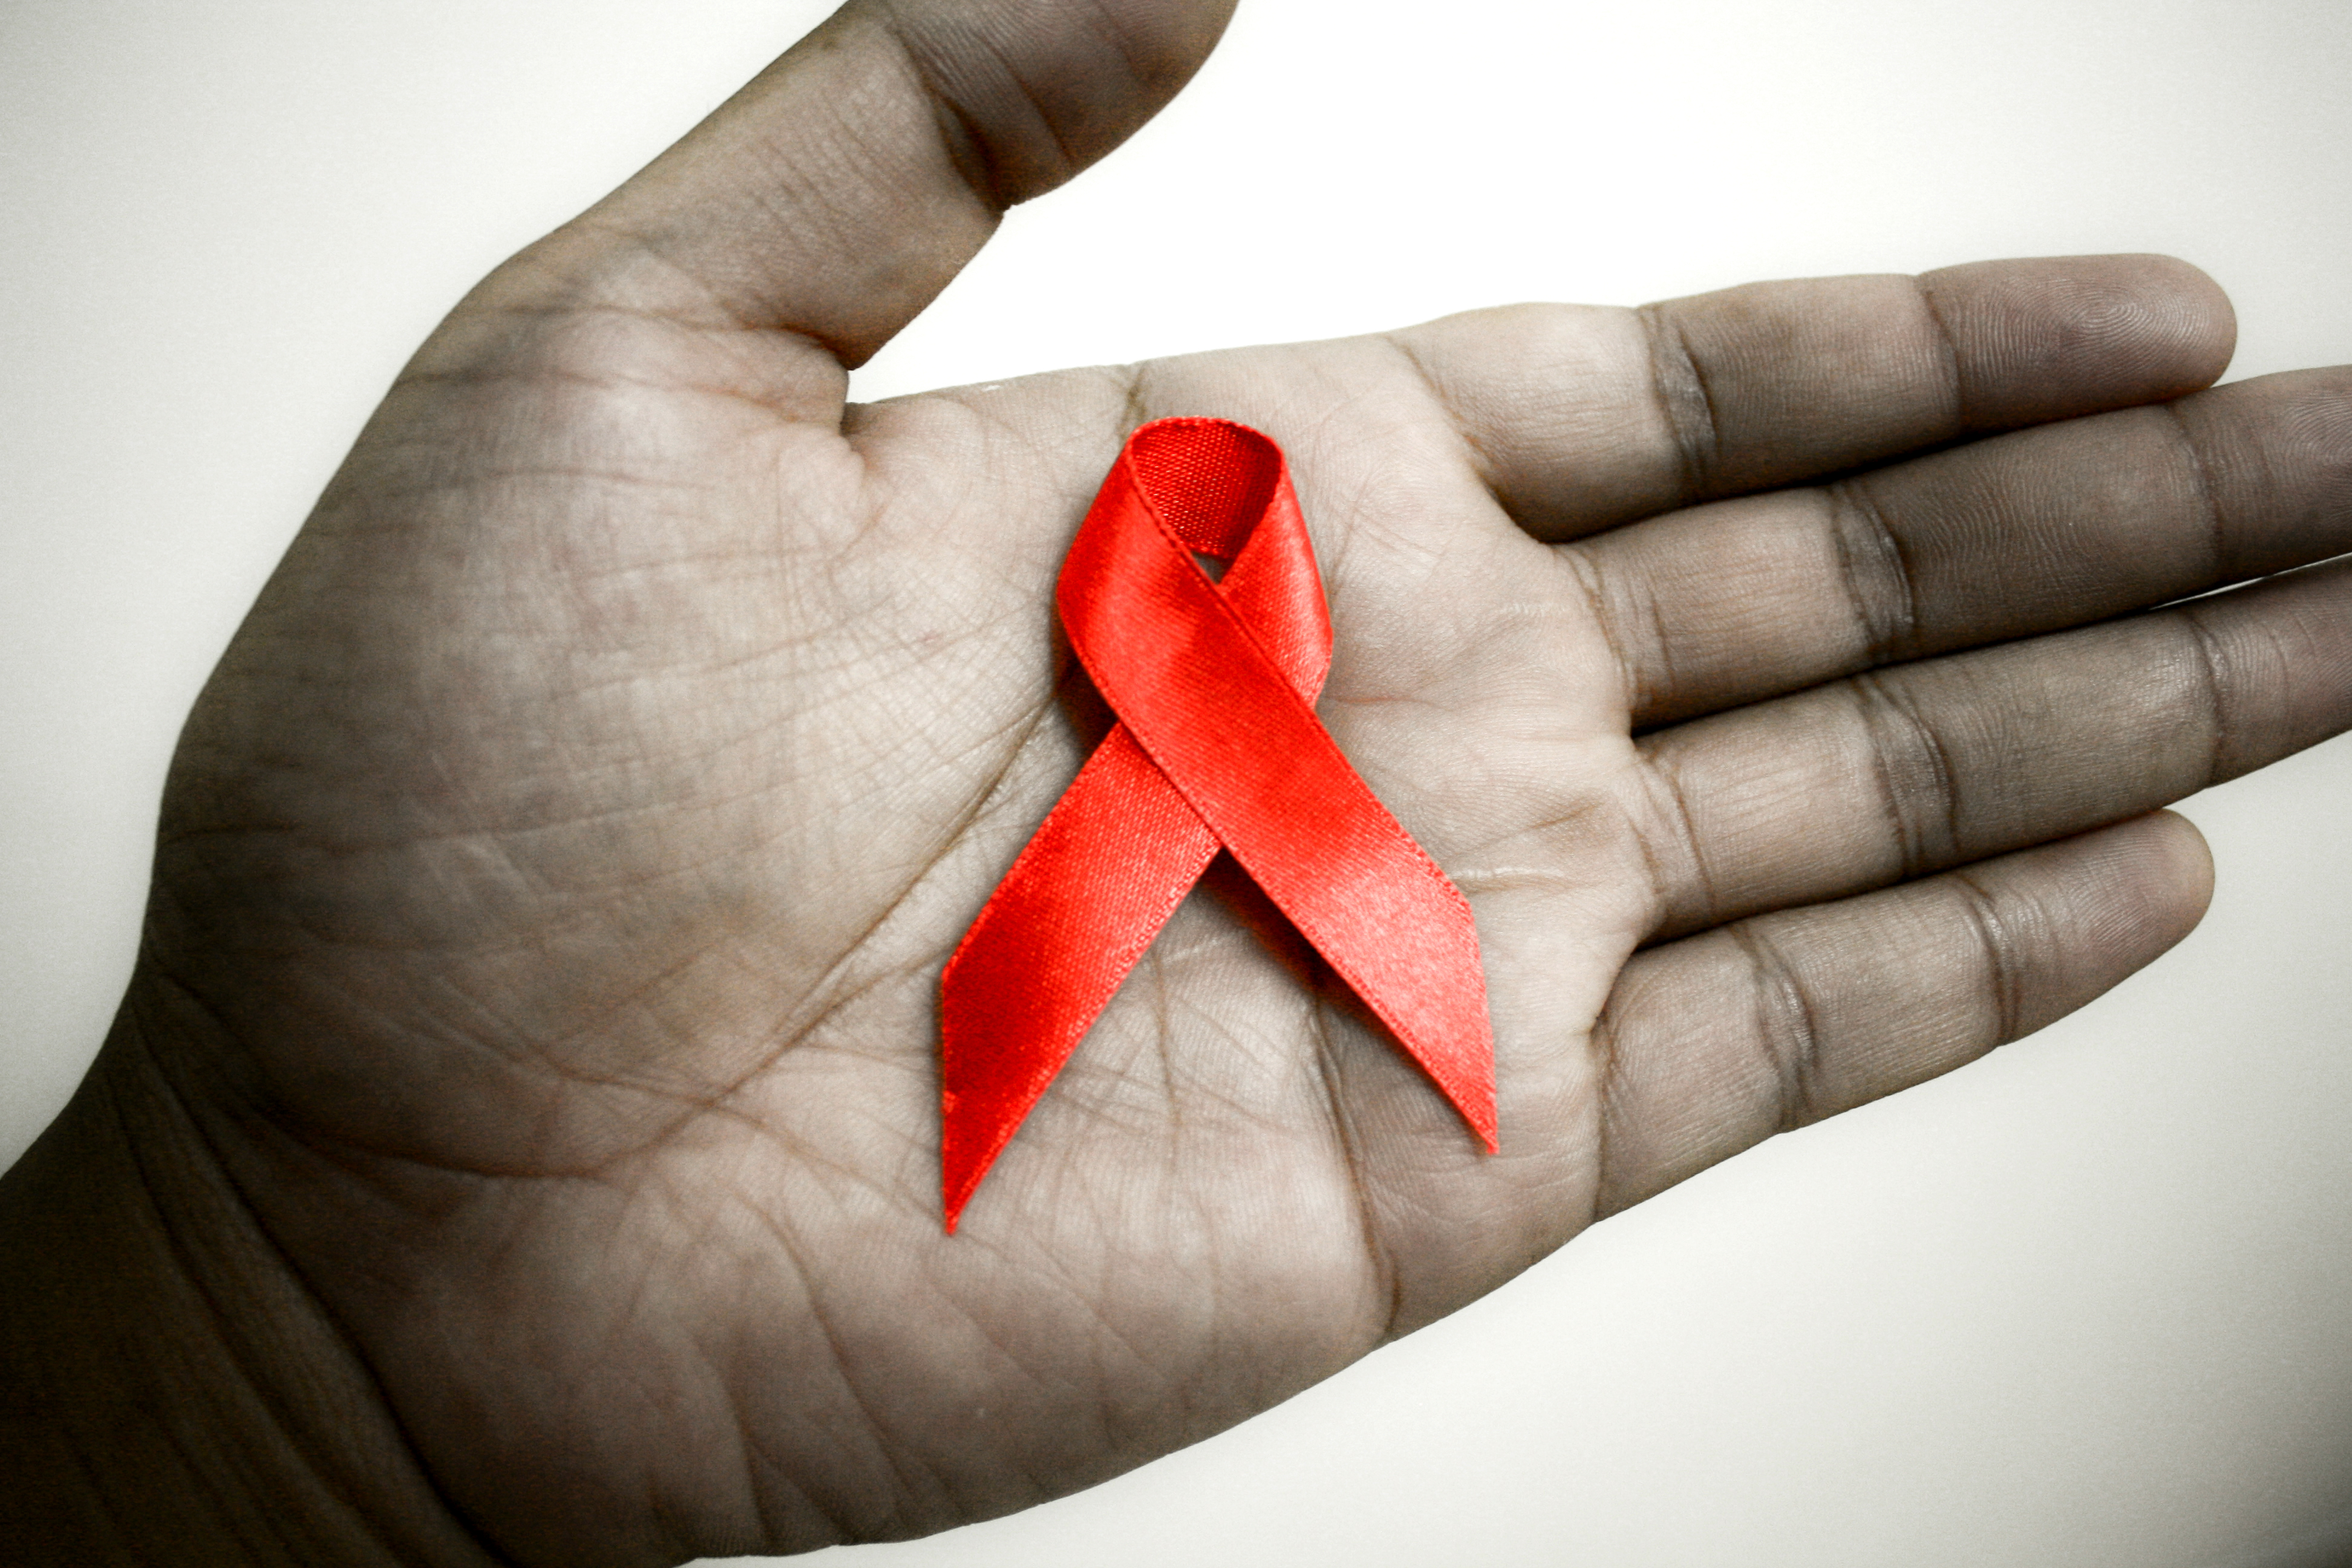 AVERT Averting HIV & AIDs